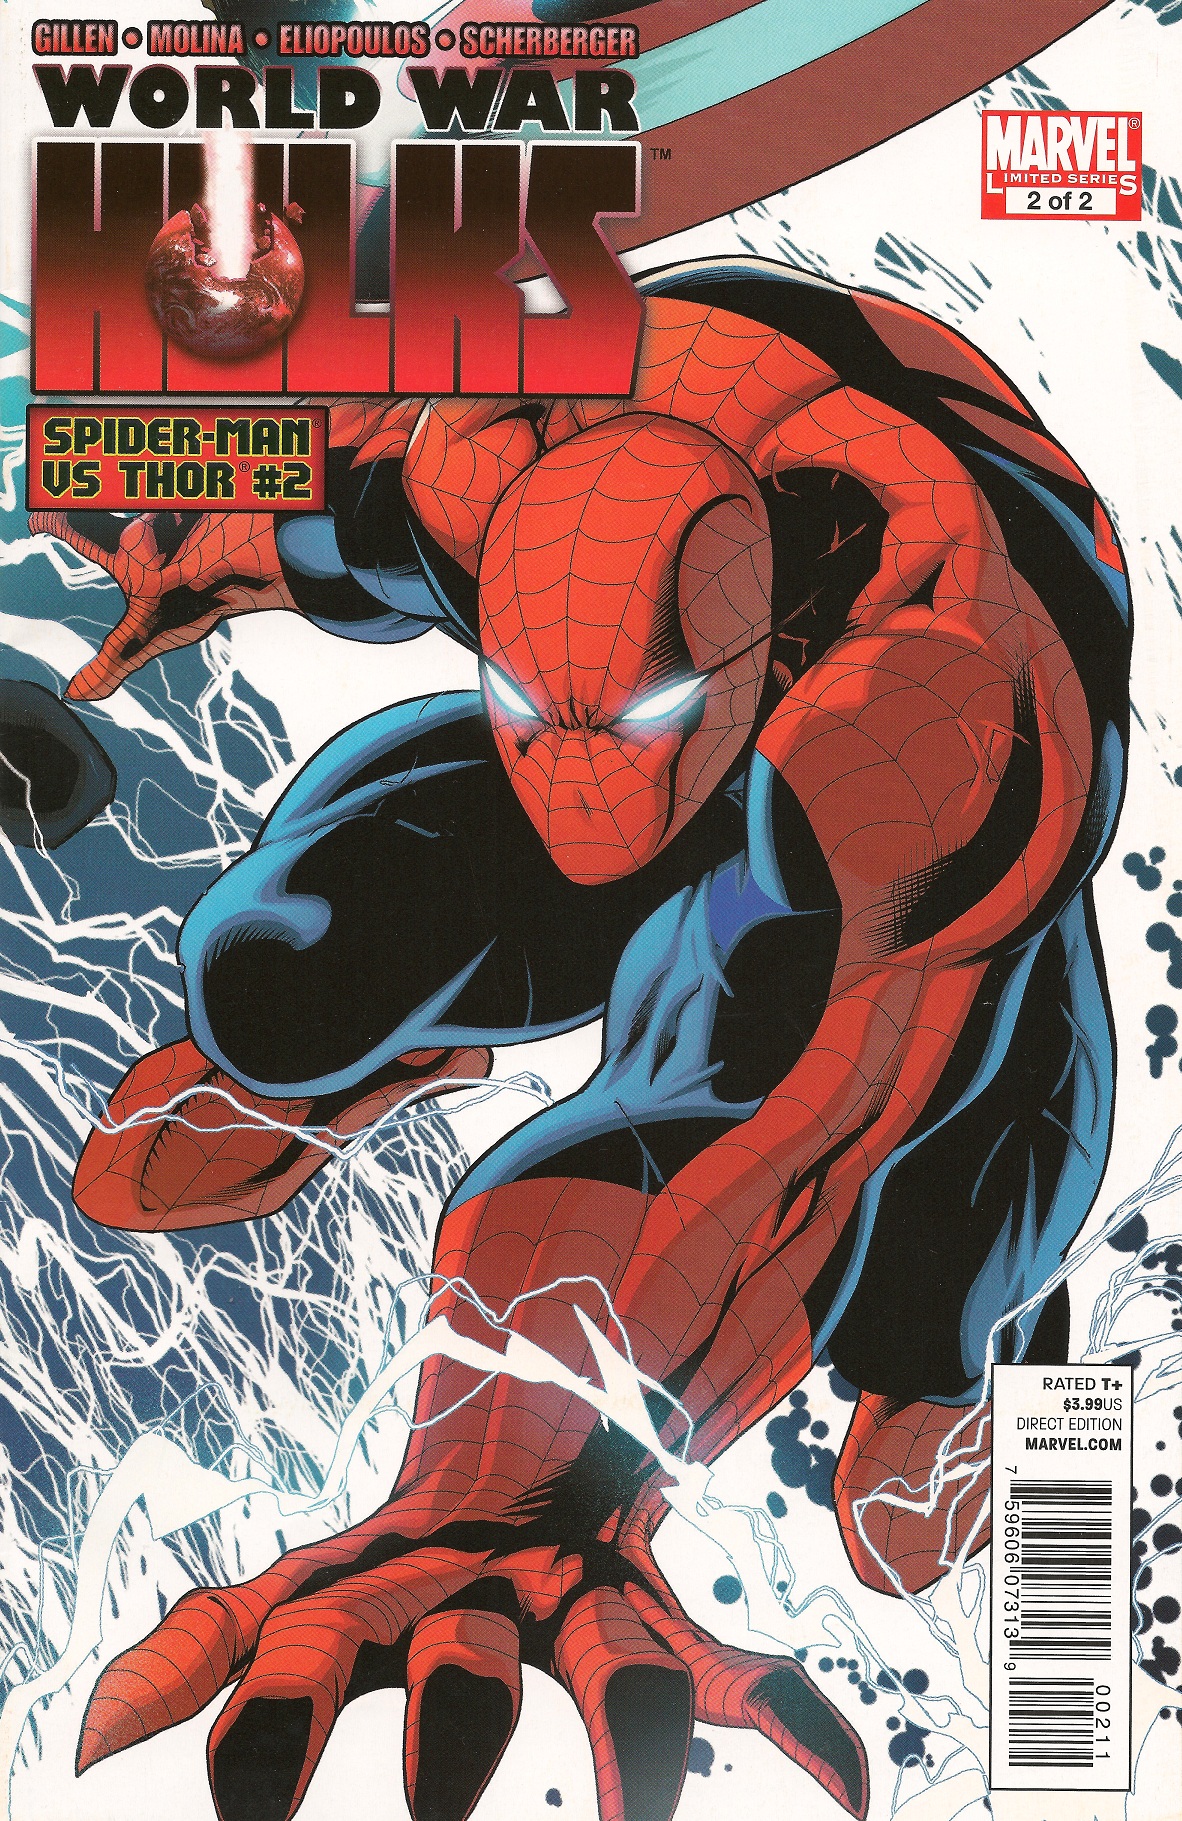 World War Hulks: Spider-Man vs Thor Vol 1 2 | Marvel Database | Fandom